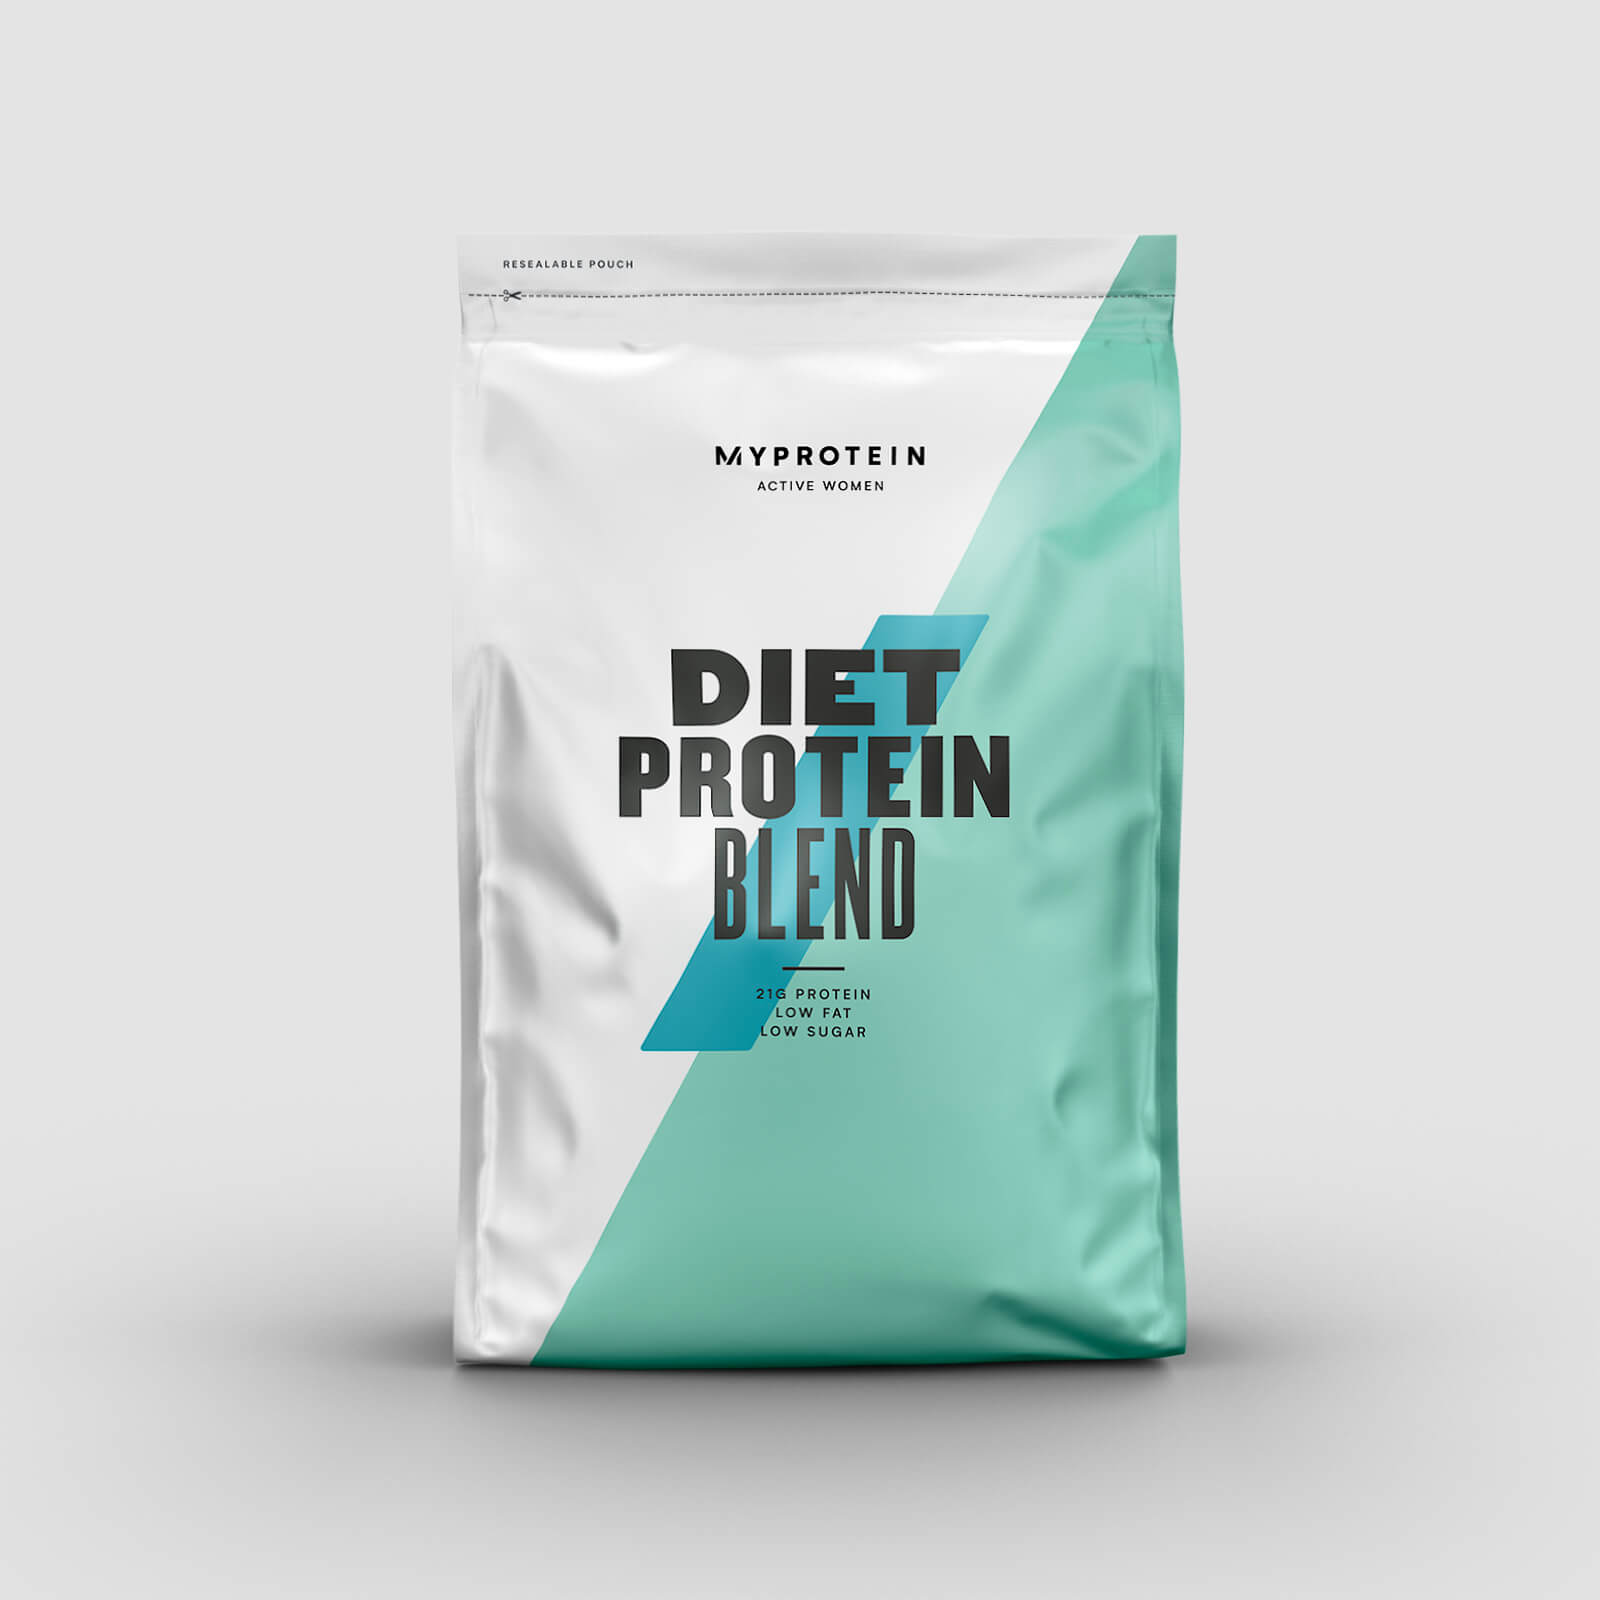 Myprotein Diet Protein Blend - 500g - Chocolate Fudge Brownie